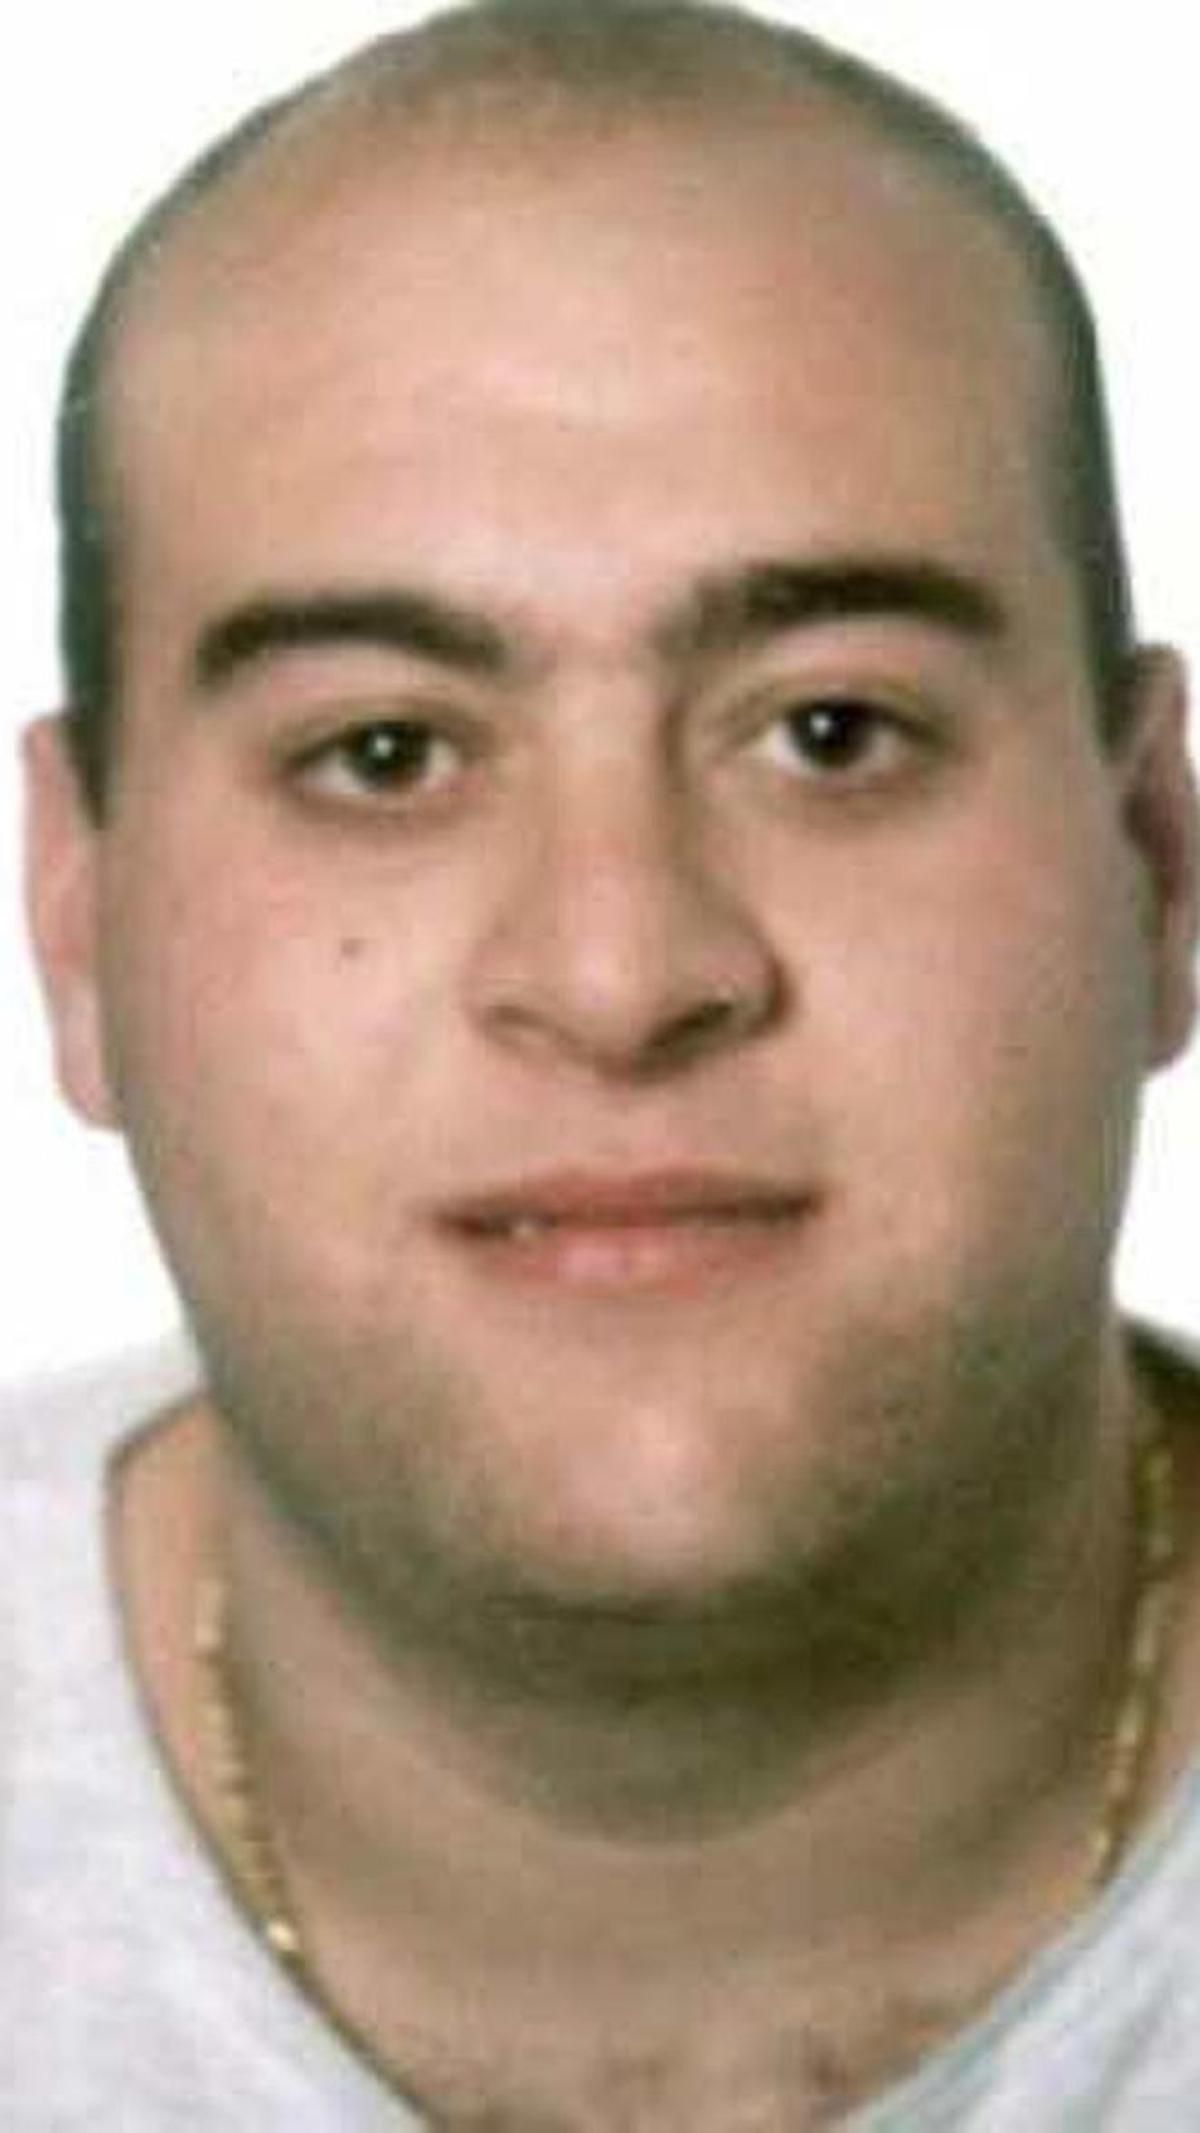 El acusado, en una imagen difundida por la Policía cuando se produjo su detención en 2008.